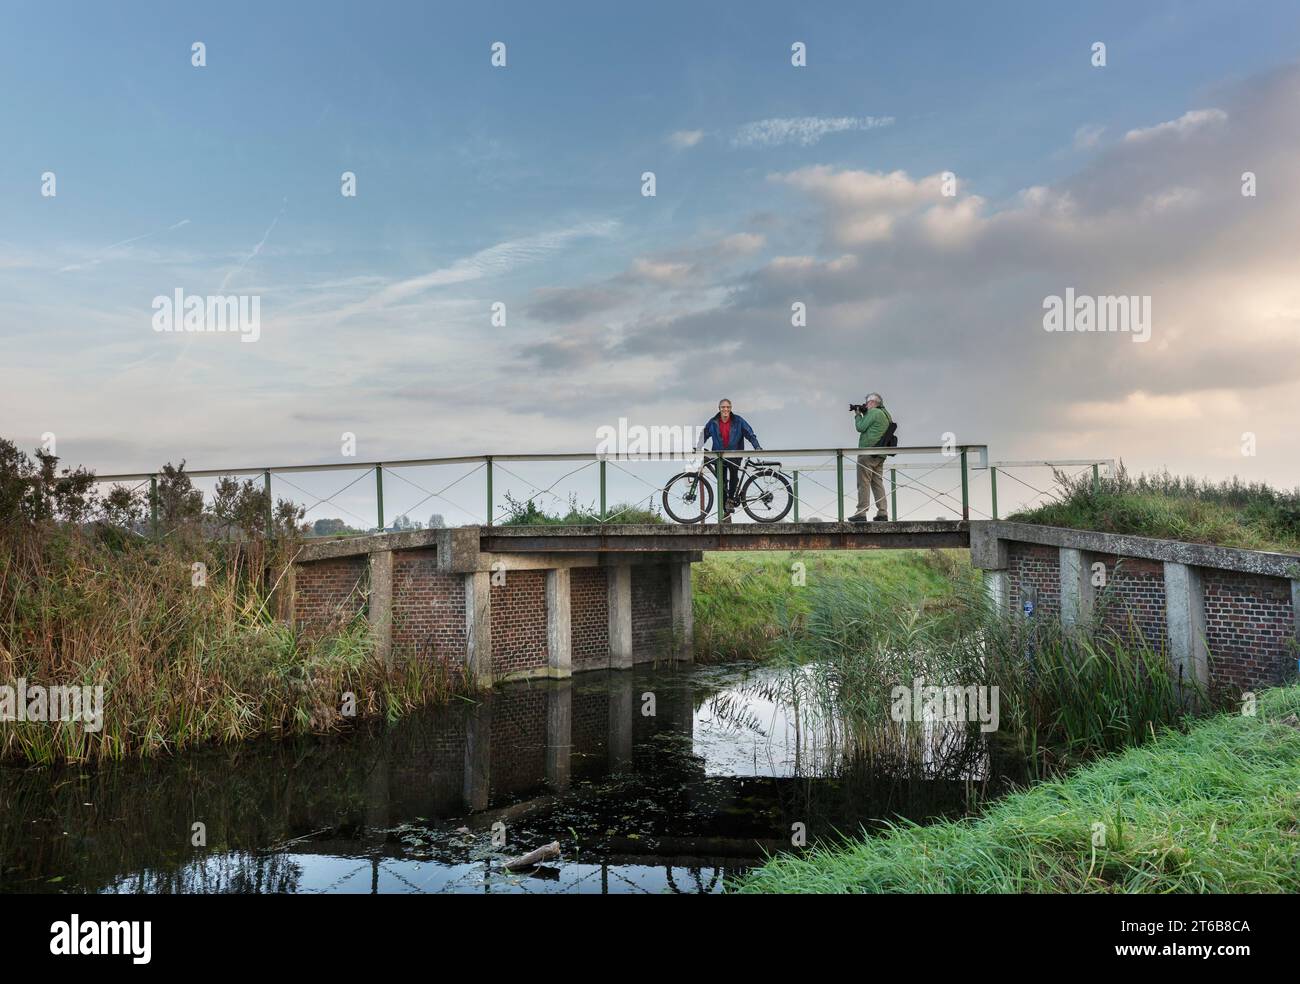 Noorddijk, Groningen, 10-20-2018. Ein Radfahrer wird auf der Brücke über den Zuidwending Kanal in Noorddijk am Stadtrand von Gro fotografiert Stockfoto